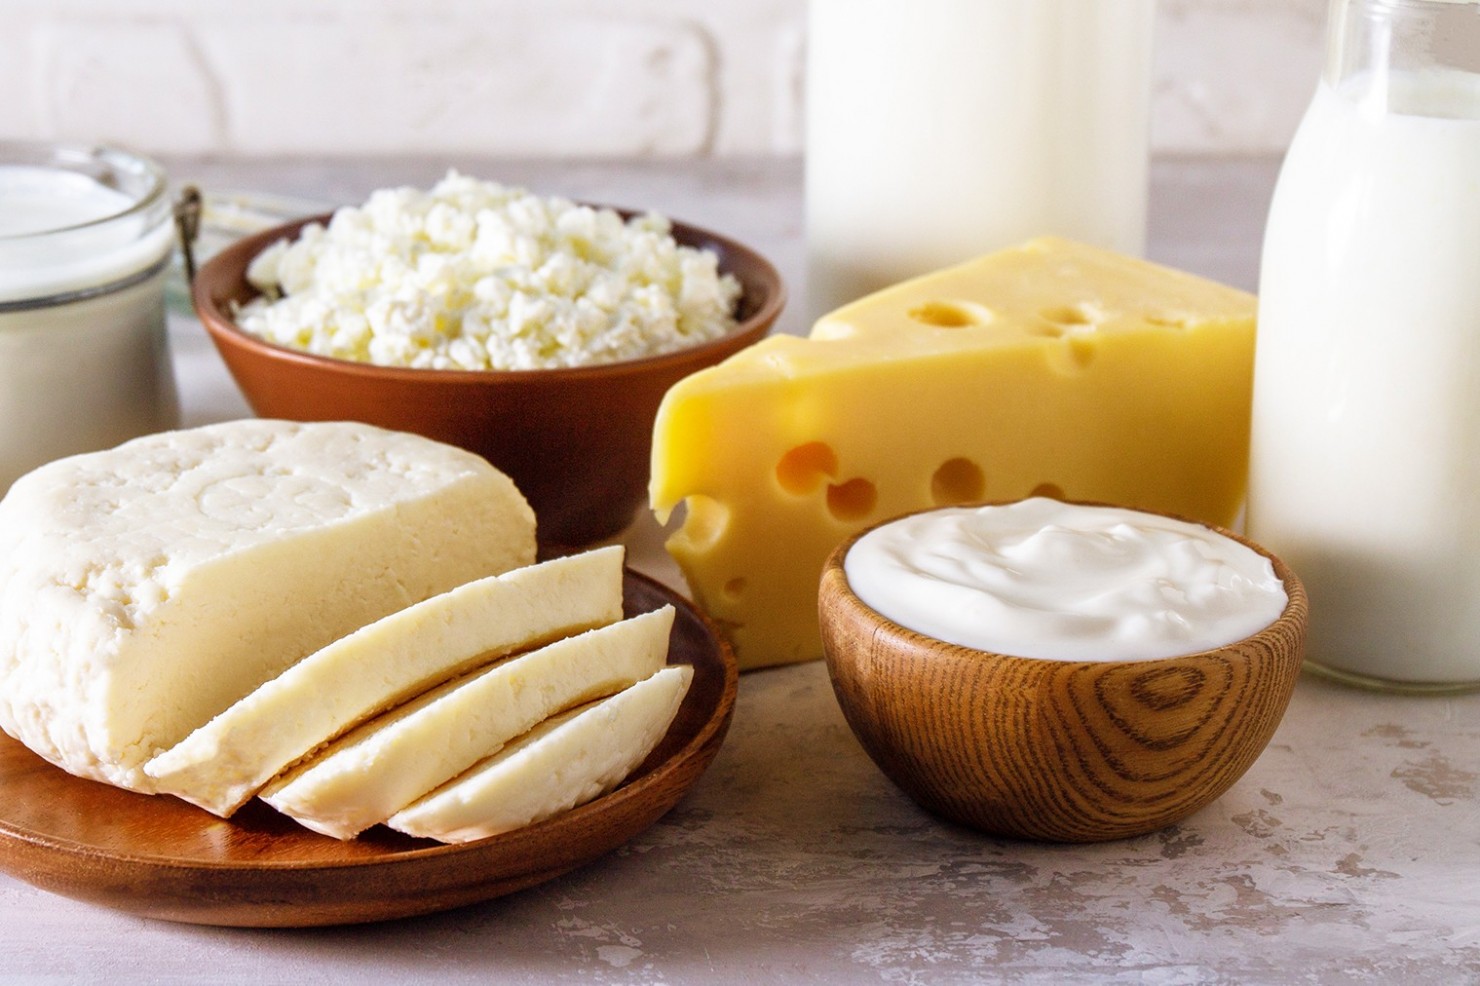  Verschiedene Milchprodukte wie Käse, Quark und Milch stehen auf einem Tisch.